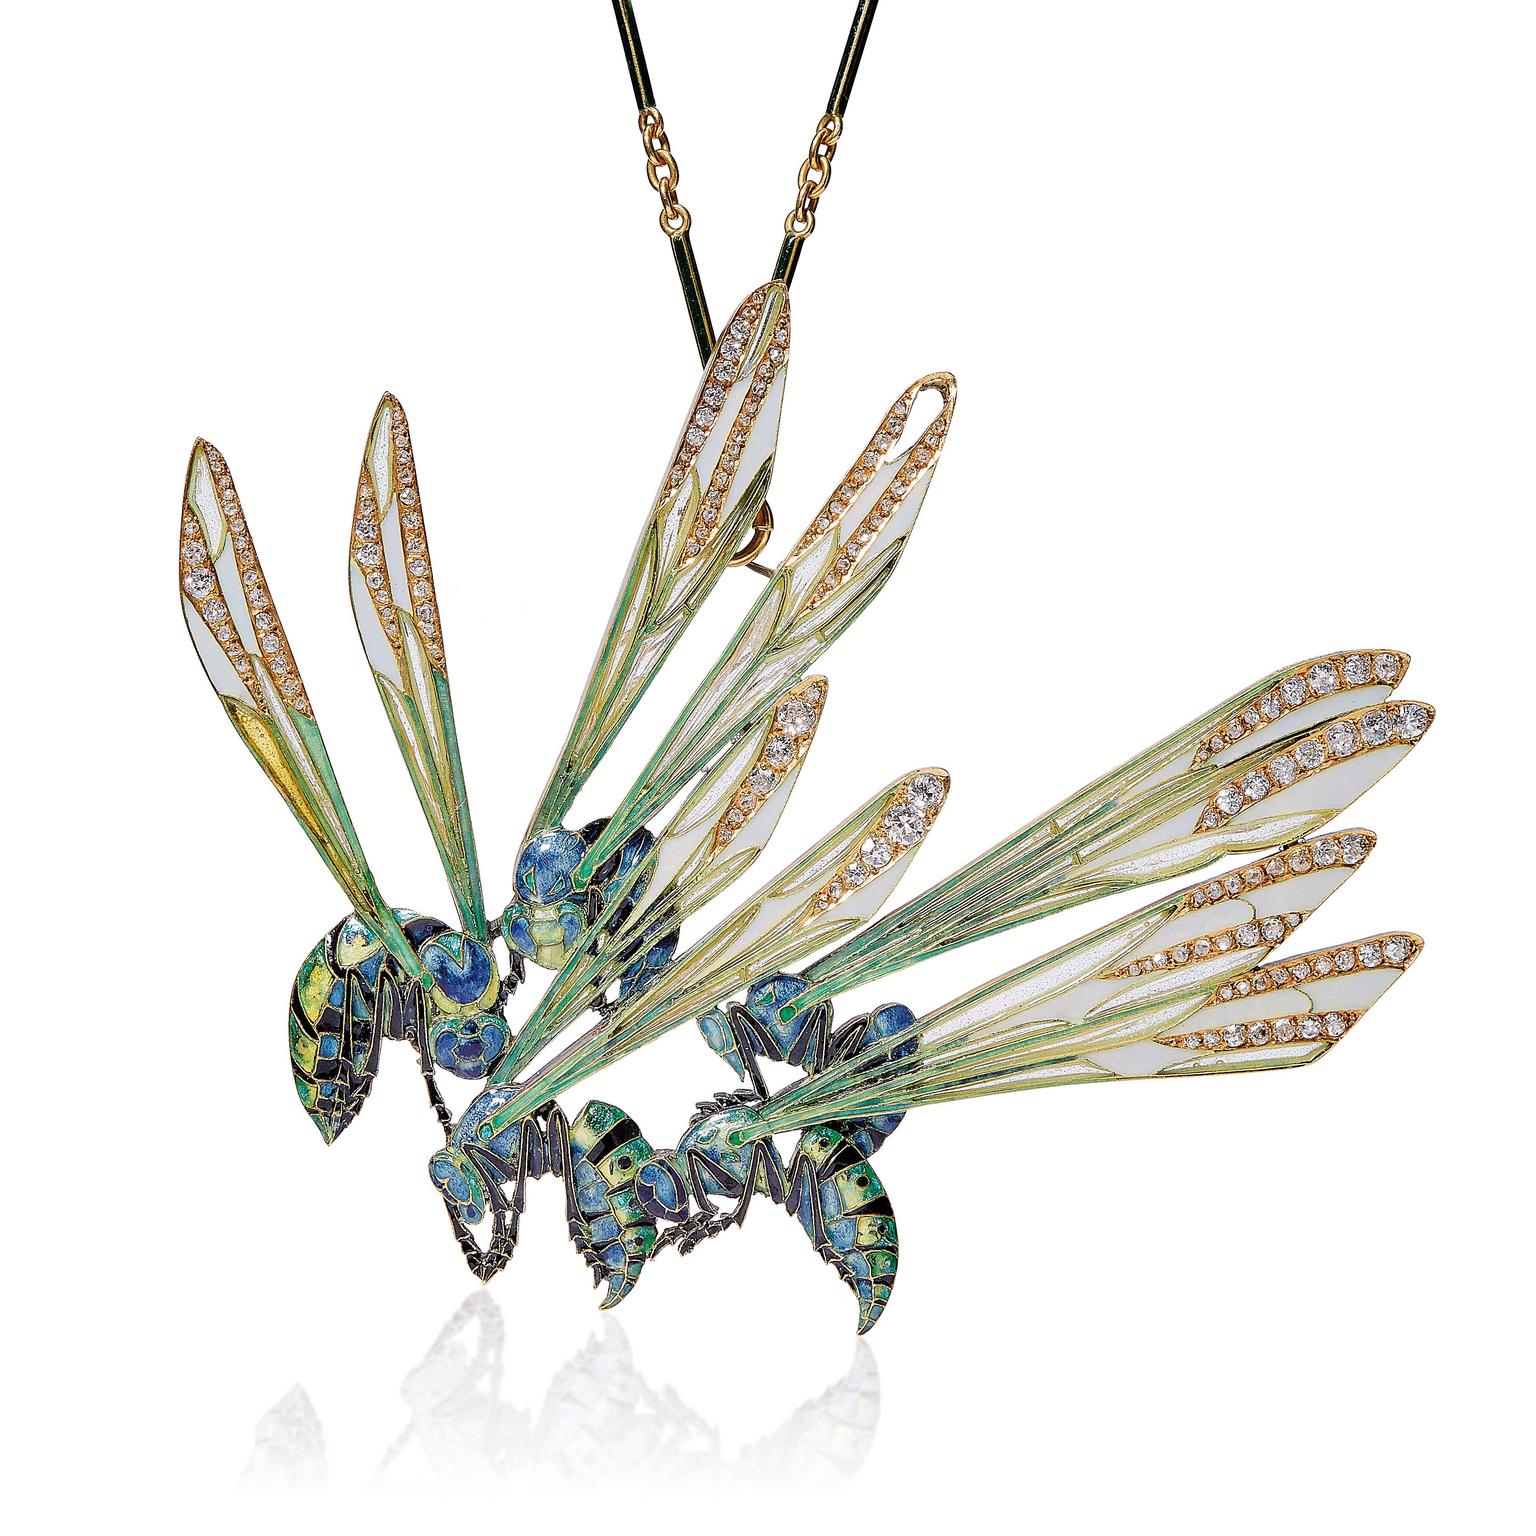 lot-44-art-nouveau-wasp-pendant-by-rene-lalique1905.jpg